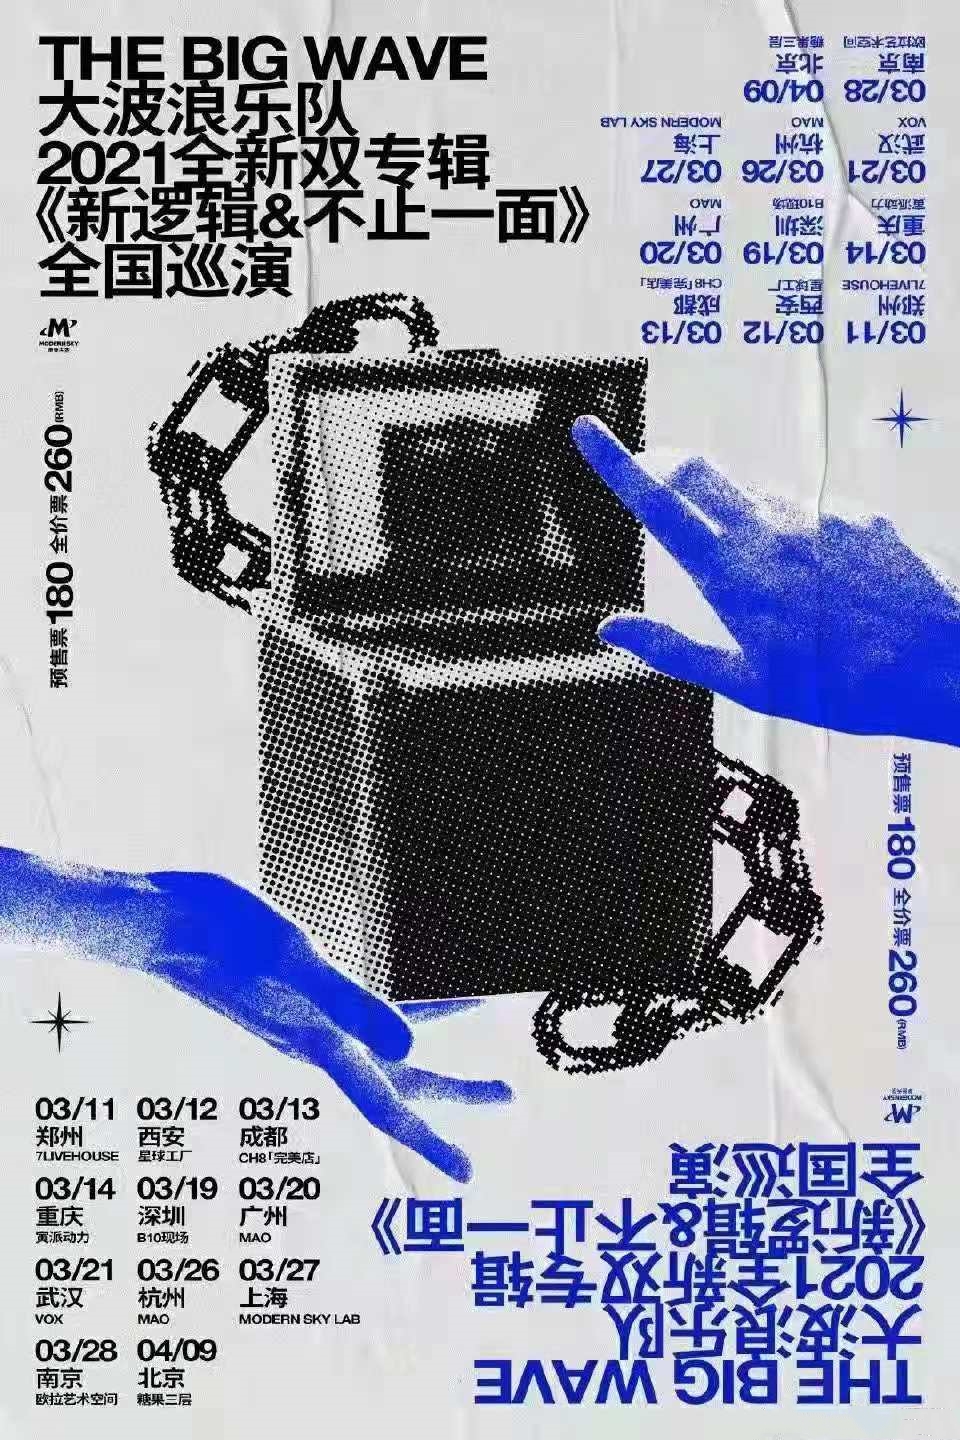 大波浪乐队2021全新双专辑巡演《新逻辑》《不止一面》全国巡演-武汉站